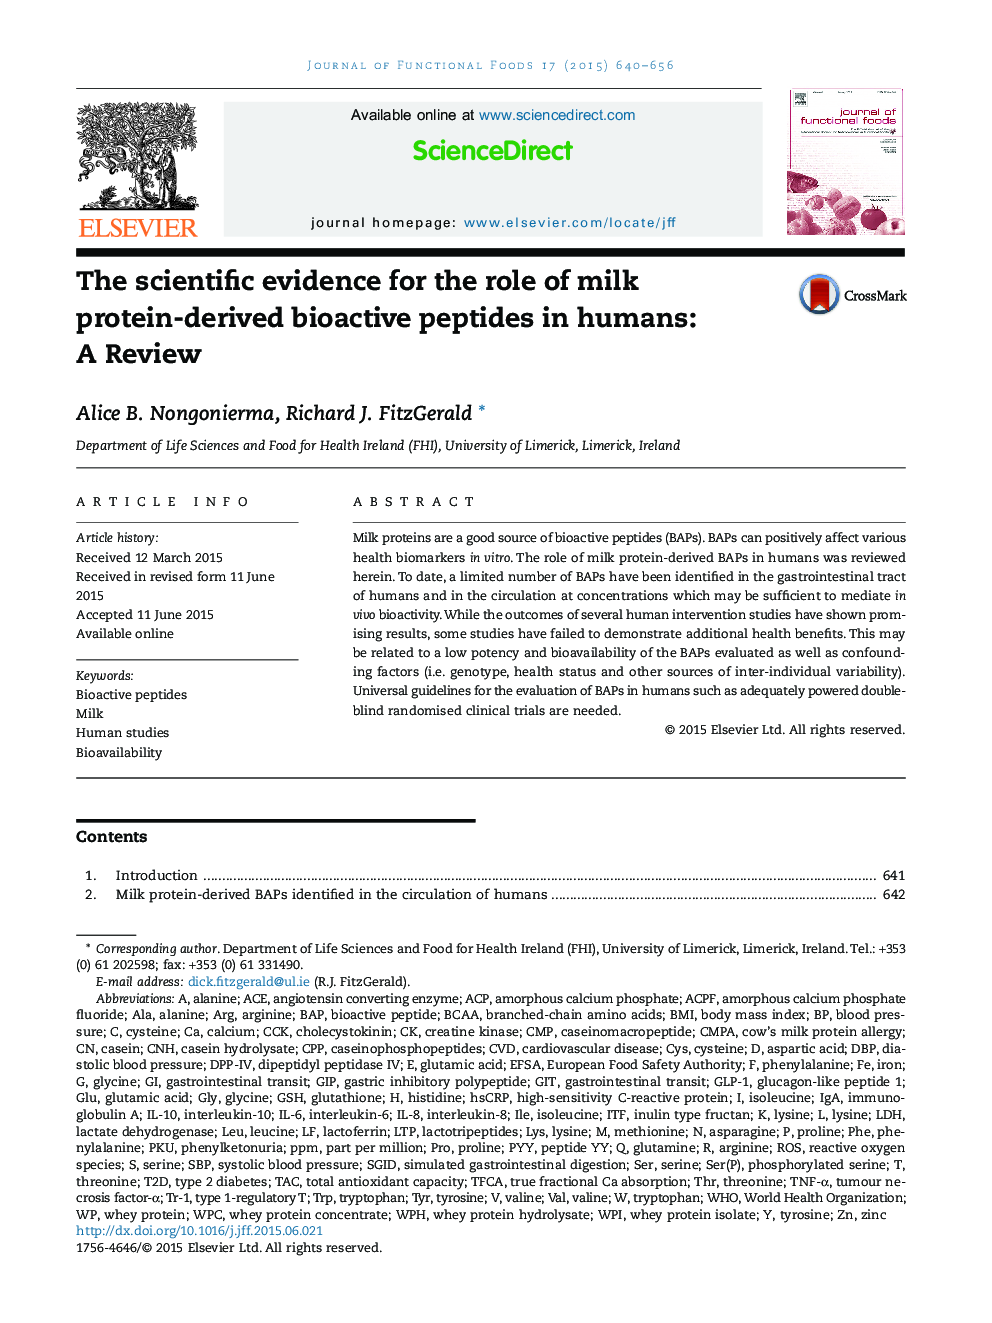 شواهد علمی برای نقش پپتید های بیولوژیک از پروتئین شیر در انسان: یک مرور 